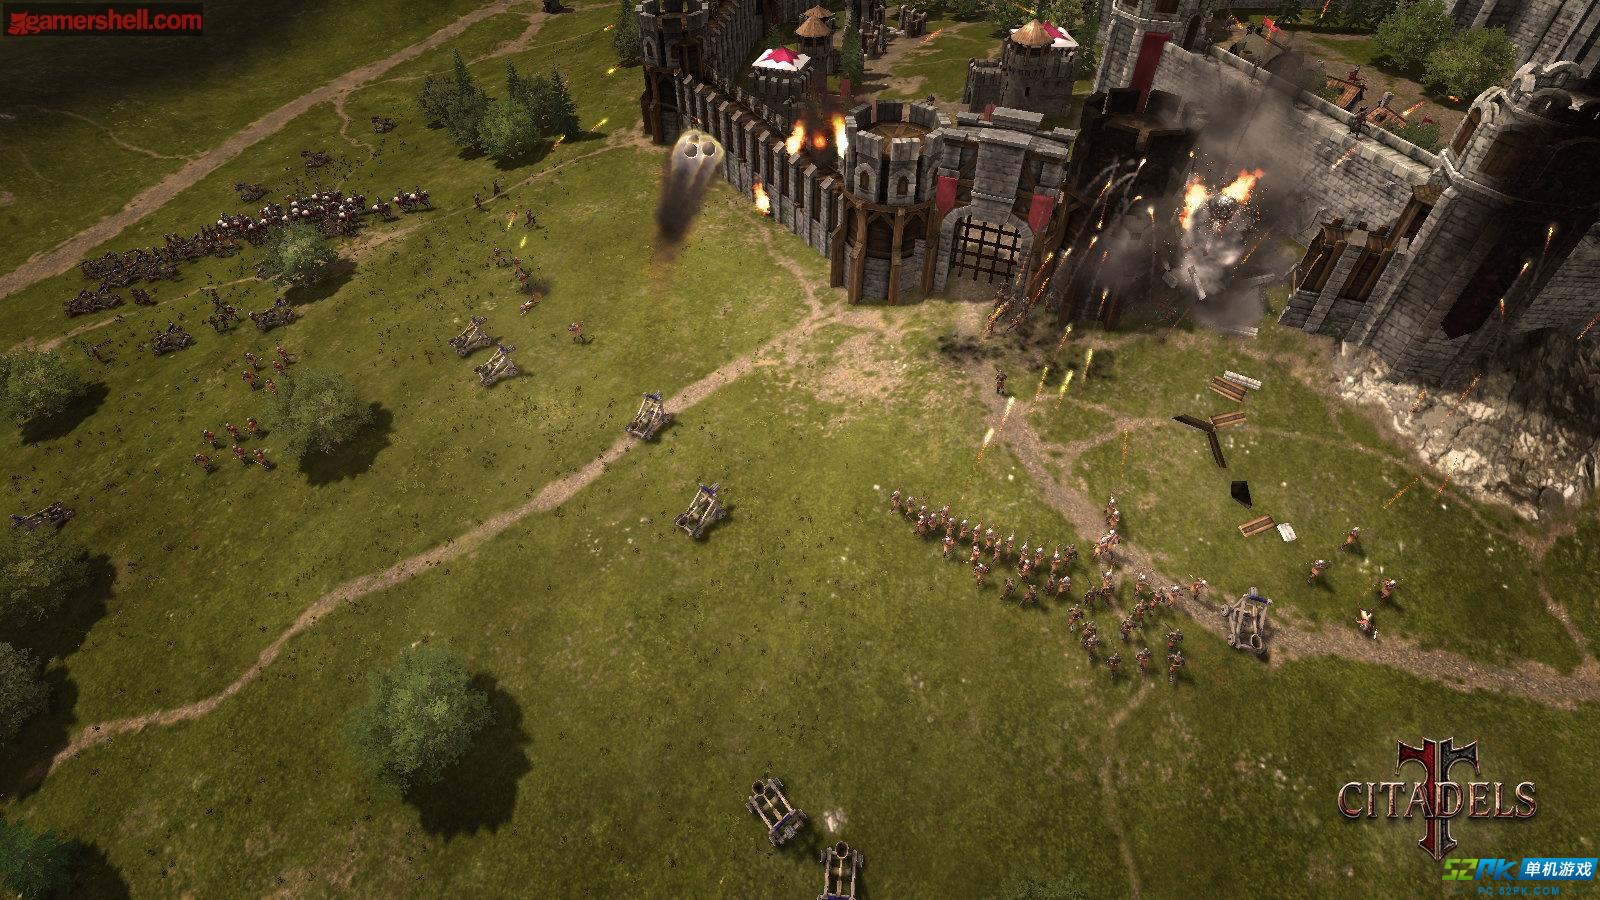 即时战略最新作品《城堡》公布游戏截图_52P